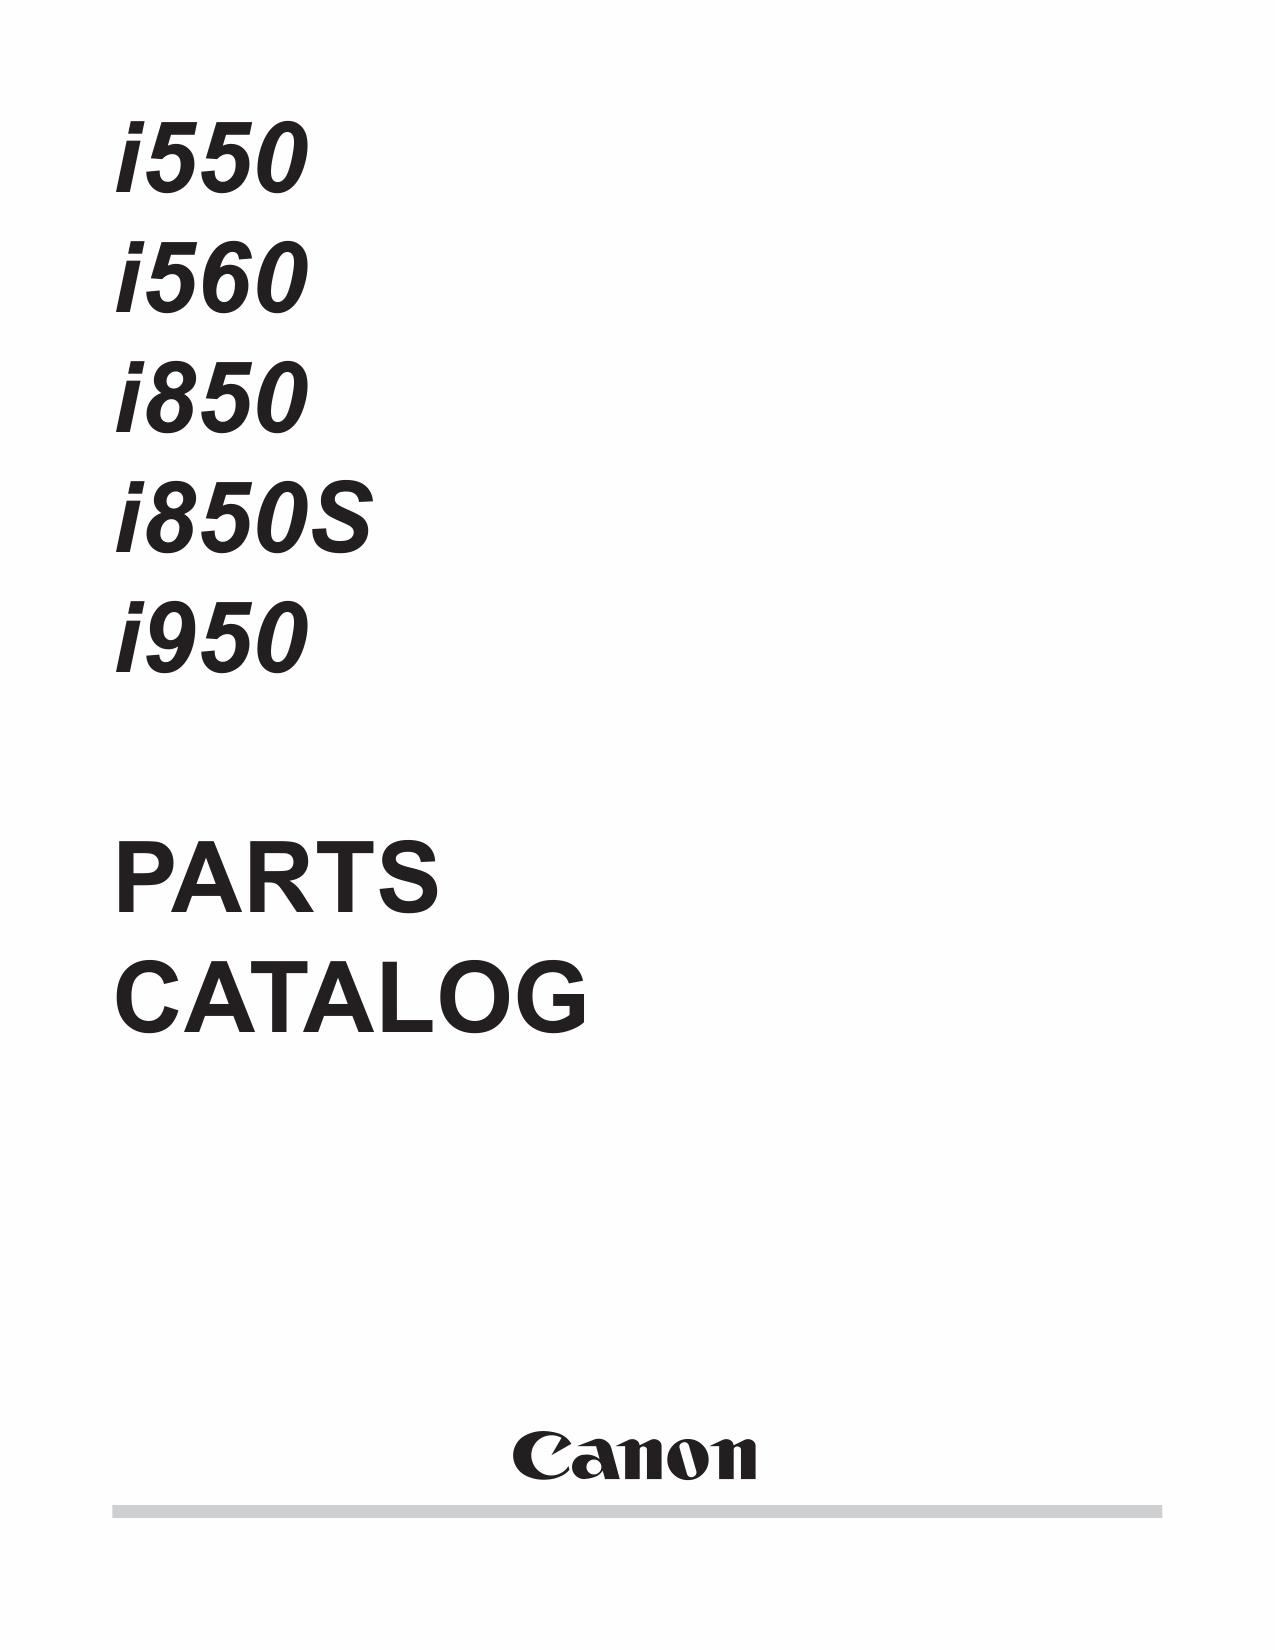 Canon PIXUS i560 i850S Parts Catalog Manual-1